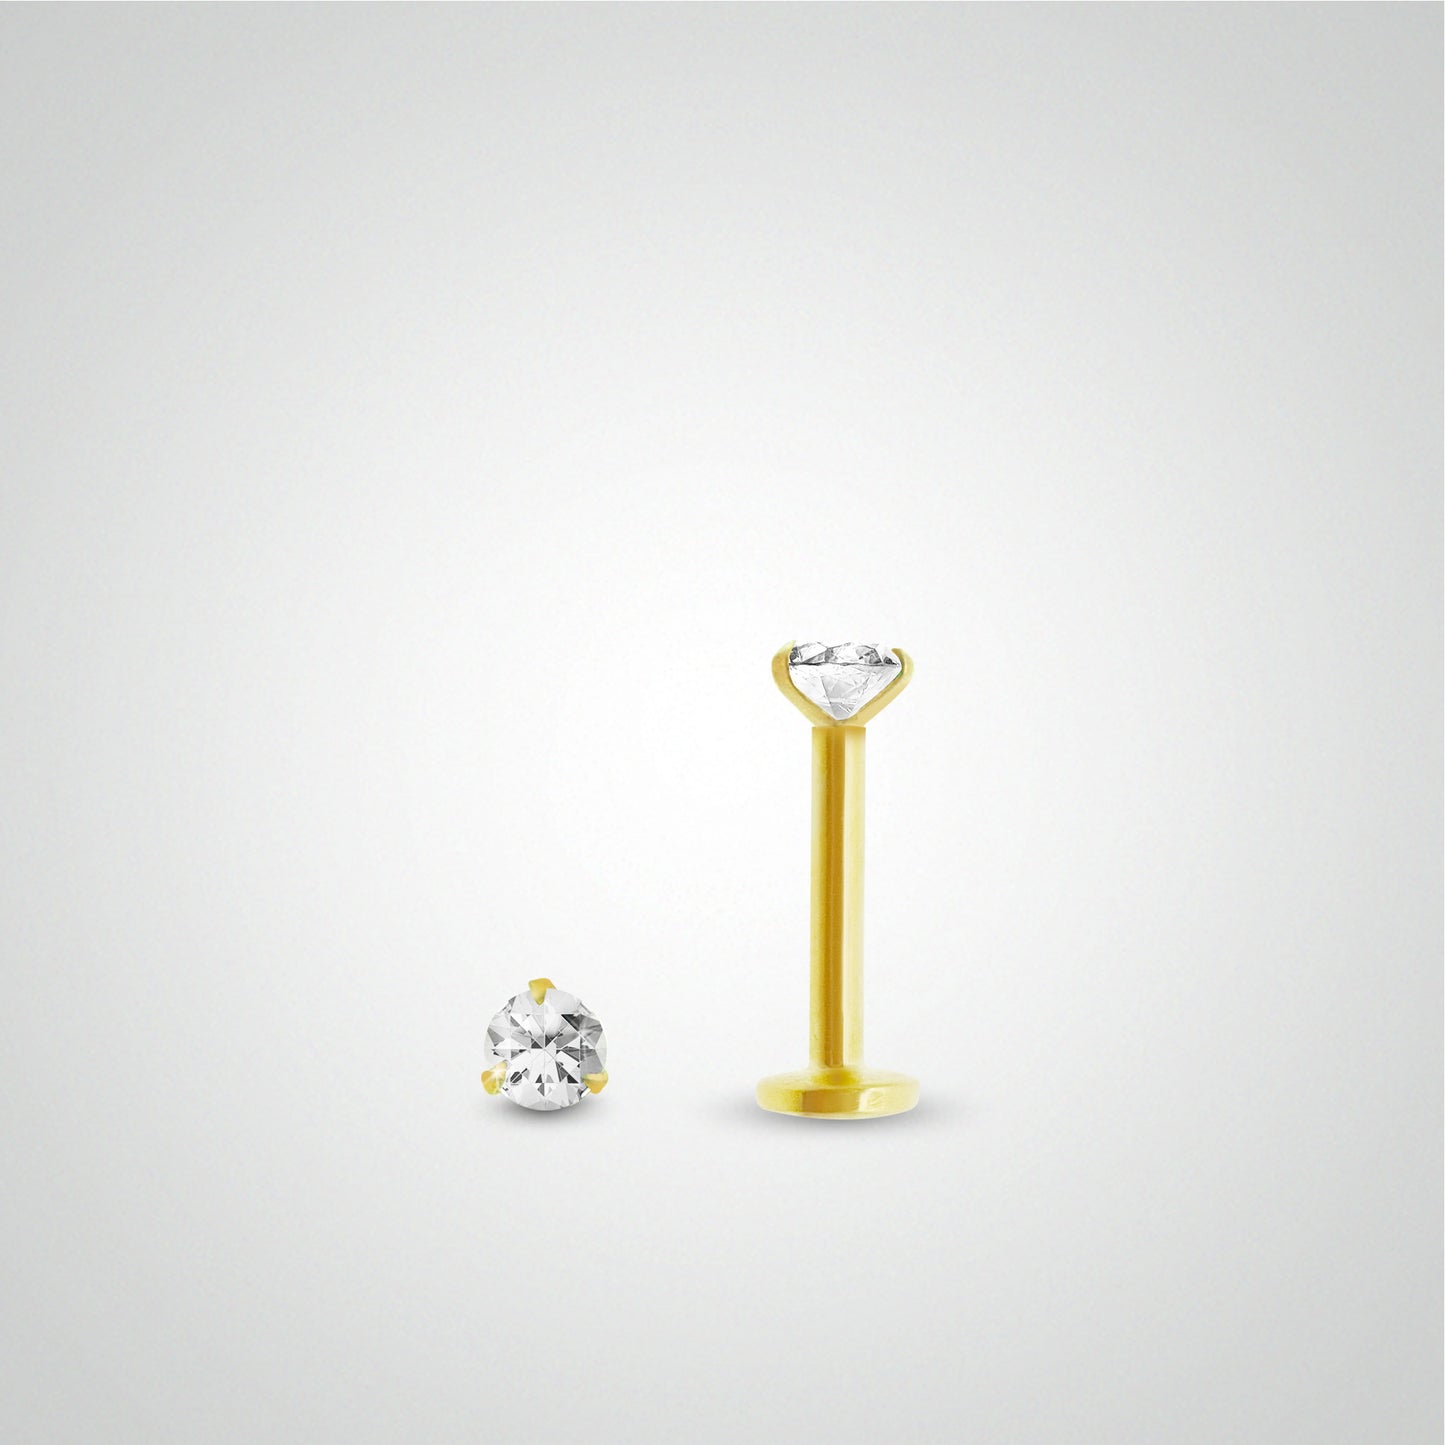 Piercing de tragus or jaune avec diamant 0,05 carats (vissable)